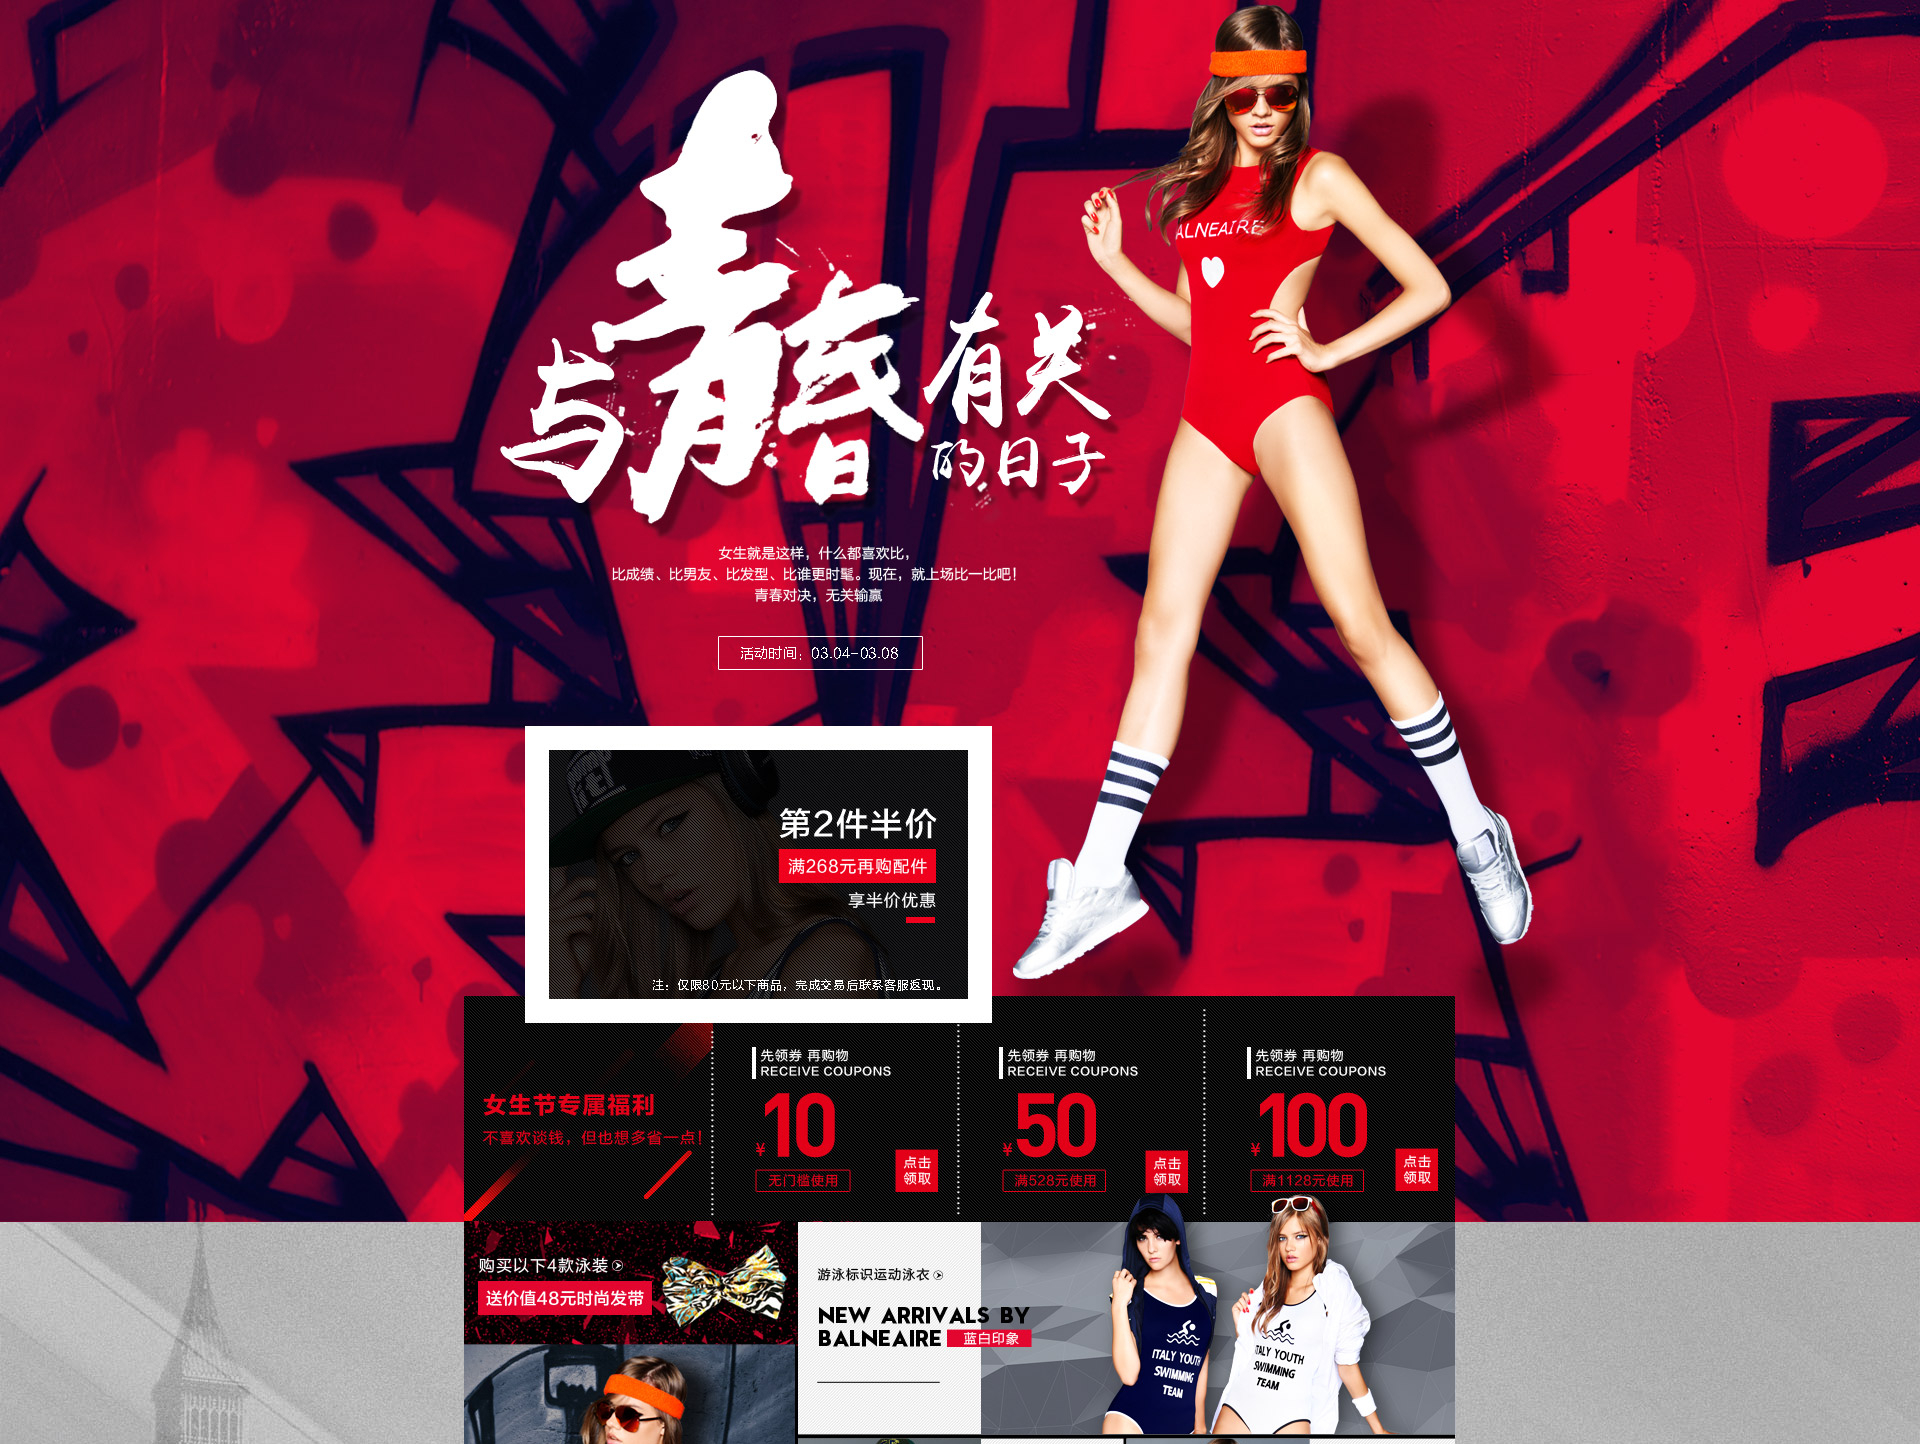 女性生殖器图片ipz127中文字幕性故事网-街拍美女-条码图